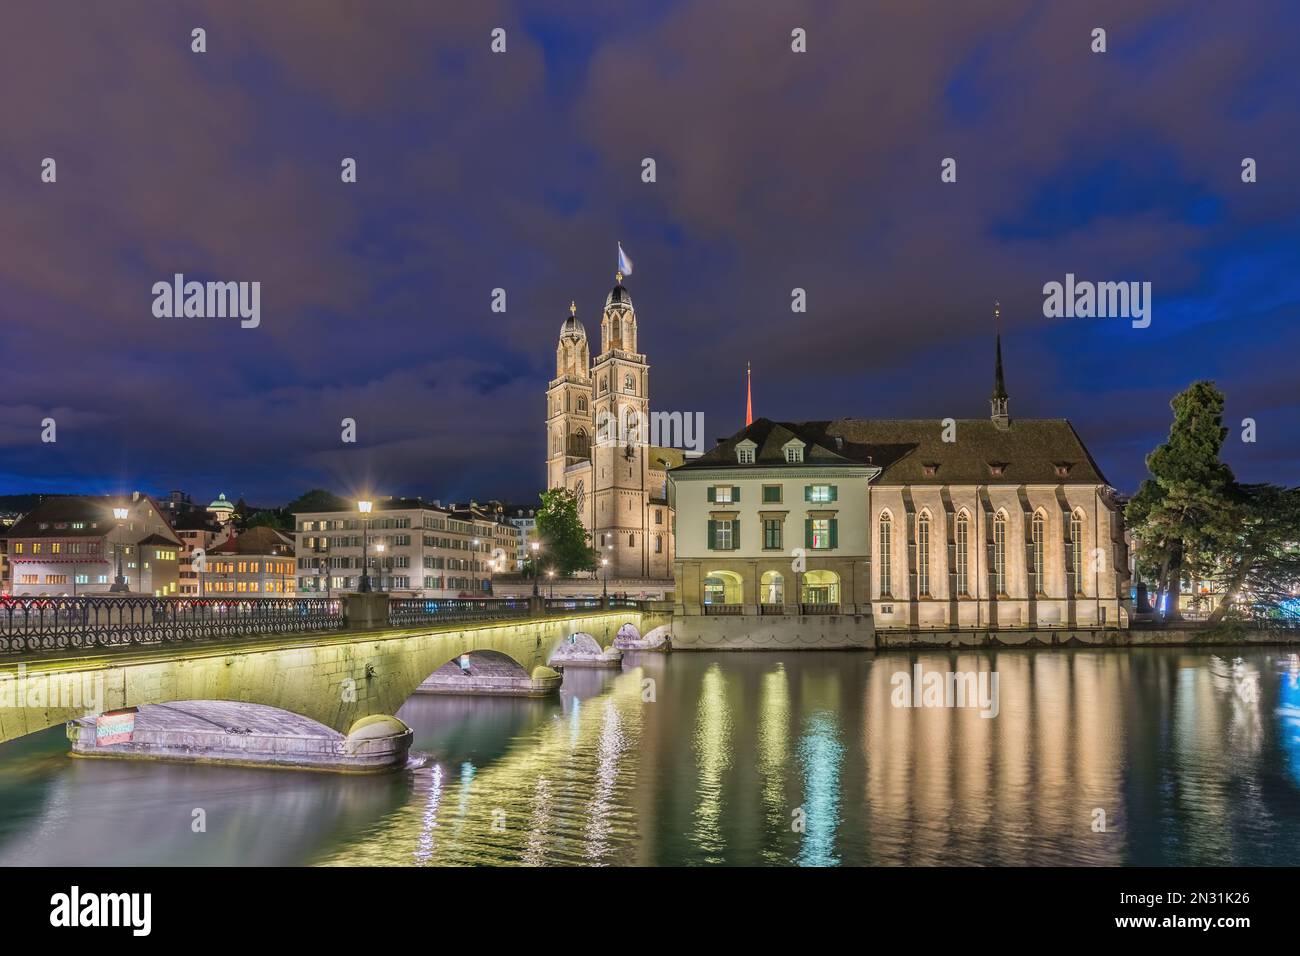 Zurich Suisse, vue nocturne de la ville à l'église Grossmunster et au pont Munster Banque D'Images